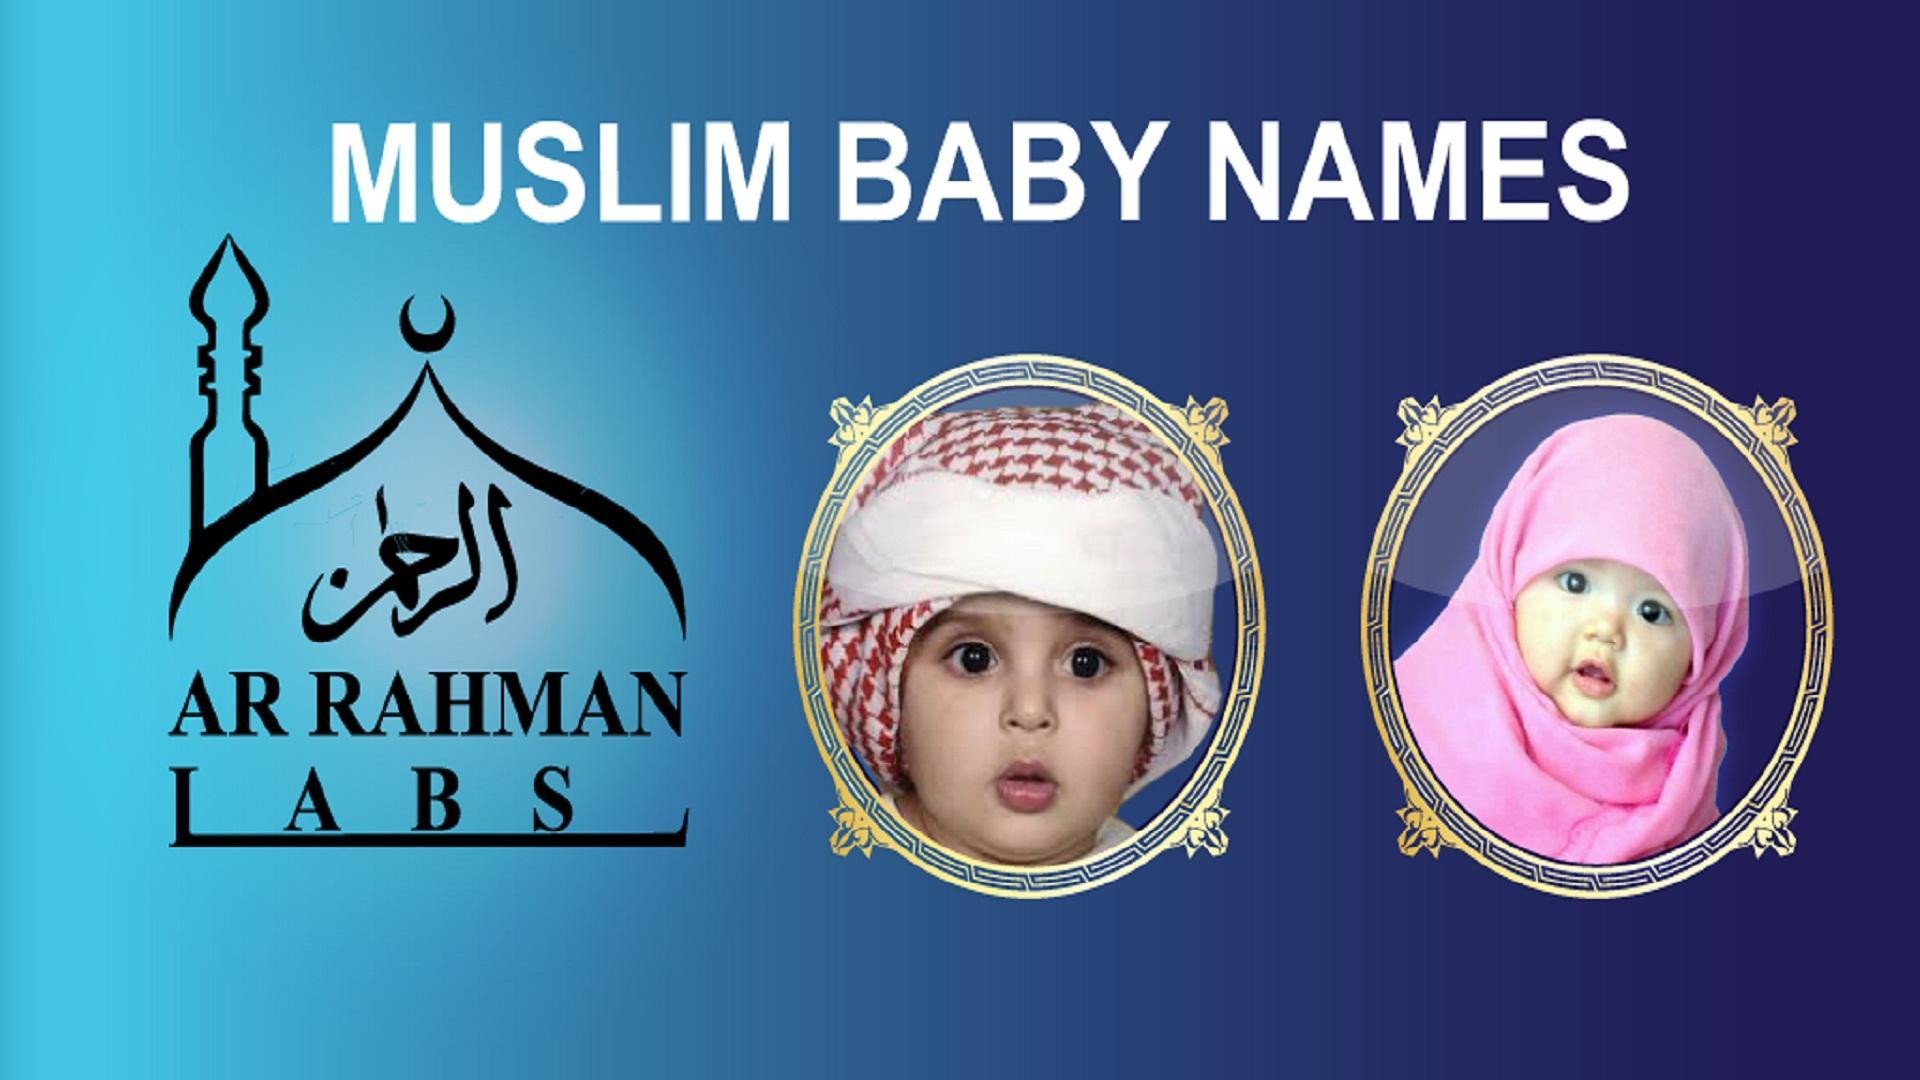 Мусульманская зовут. Мусульманские имена. Самое красивое имя мусульманское. Мусульманские имена для мальчиков. Красивые мусульманские имена для девочек и мальчиков.